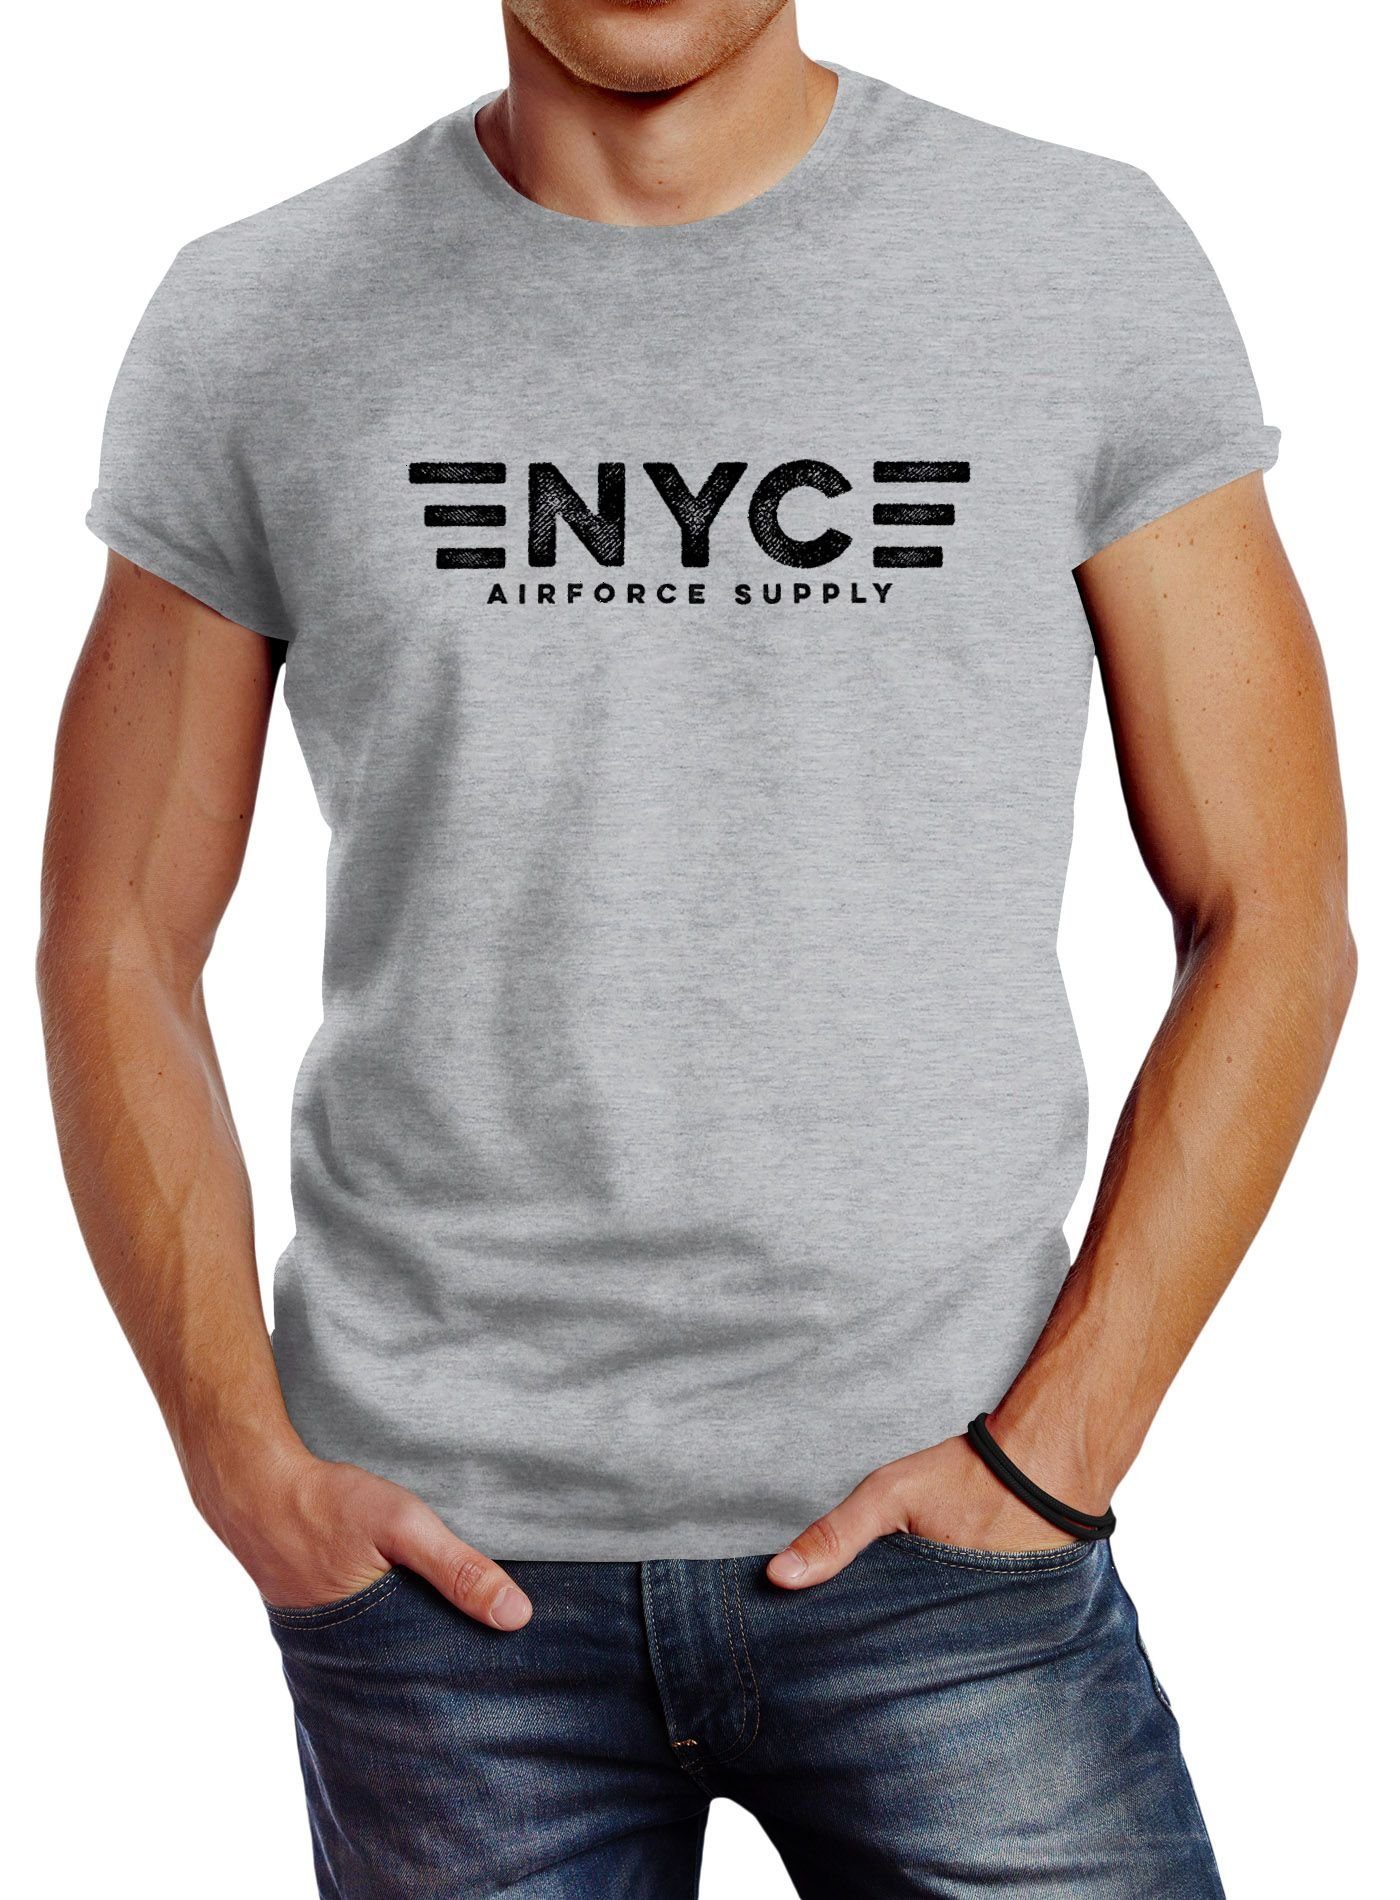 Print-Shirt Print NYC New City Airforce Neverless® York grau mit Aufdruck Print Neverless T-Shirt Army Supply Herren